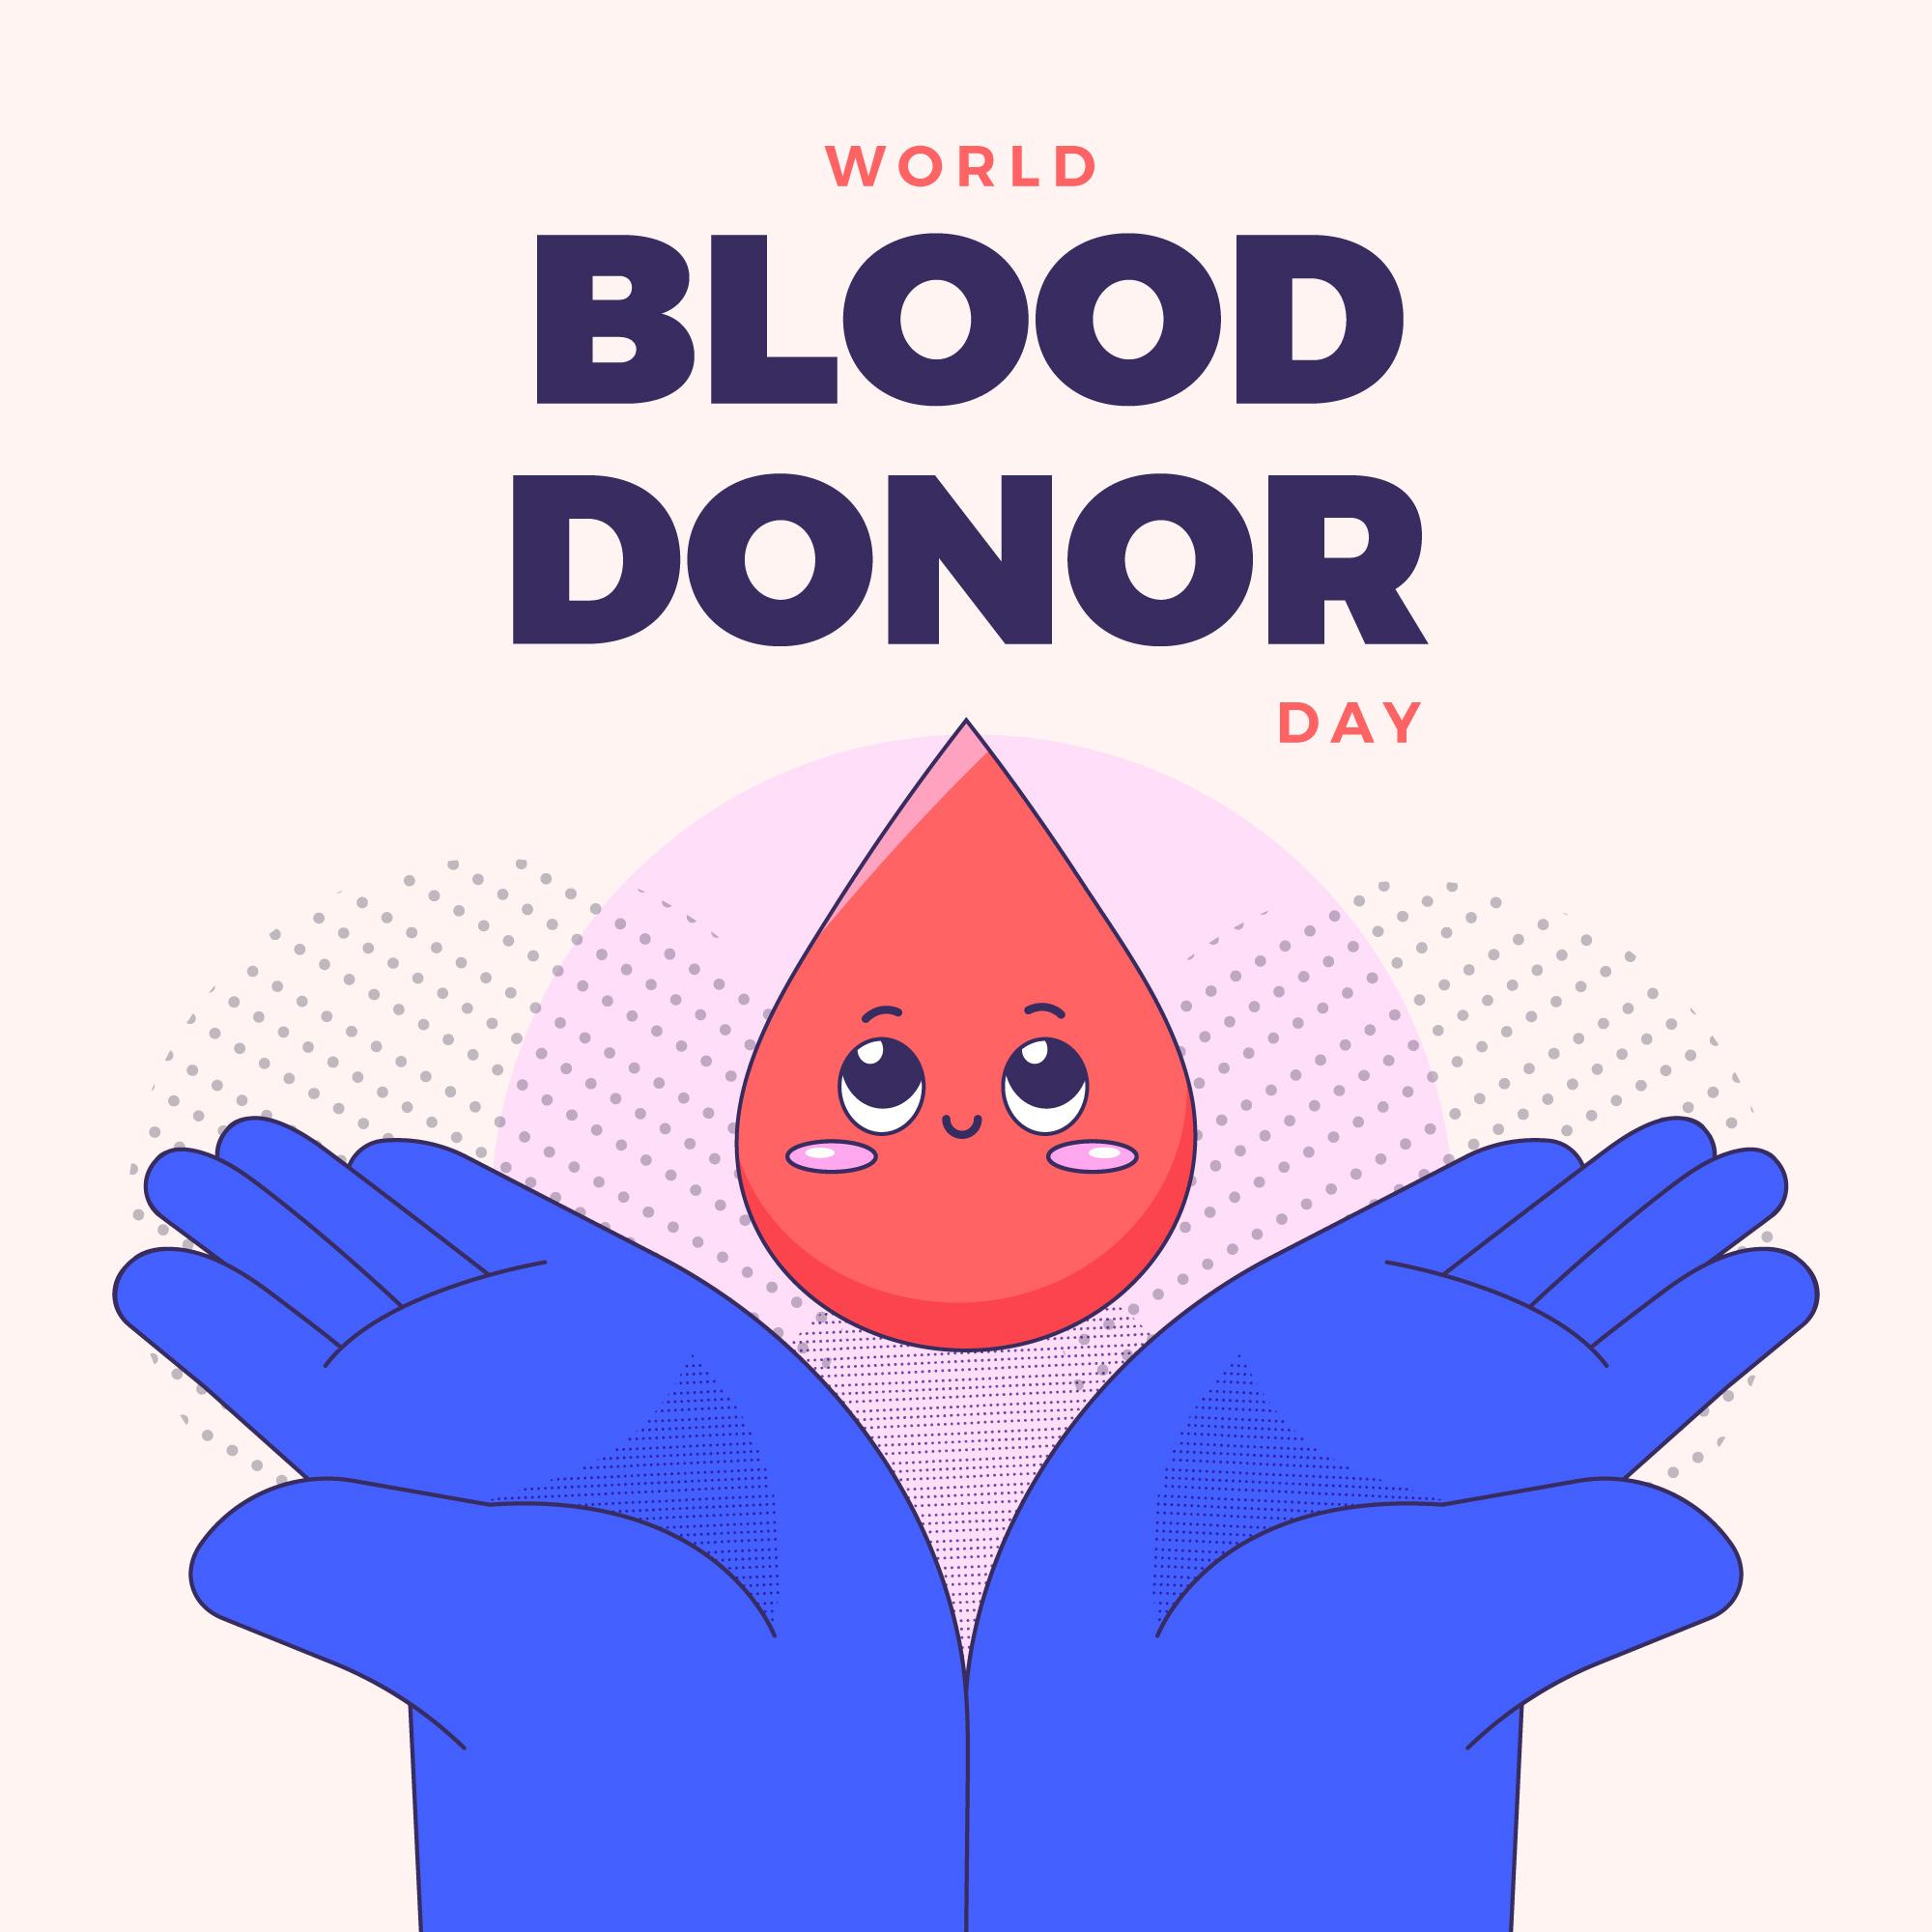 世界献血者日主题宣传插图0